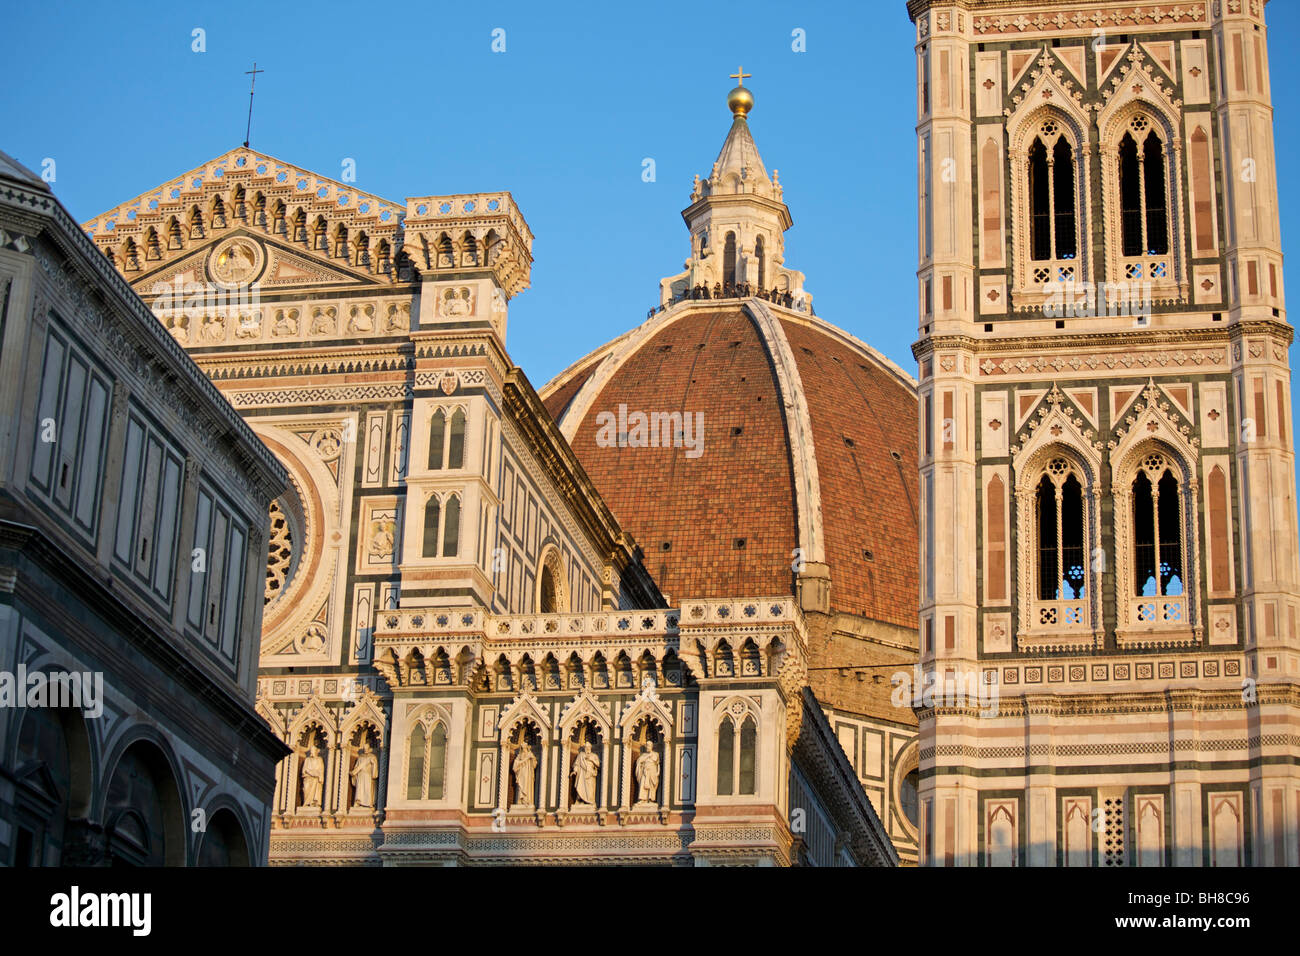 Santa Maria Del Fiore and Giotto's Campanile, Florence, Italy Stock Photo